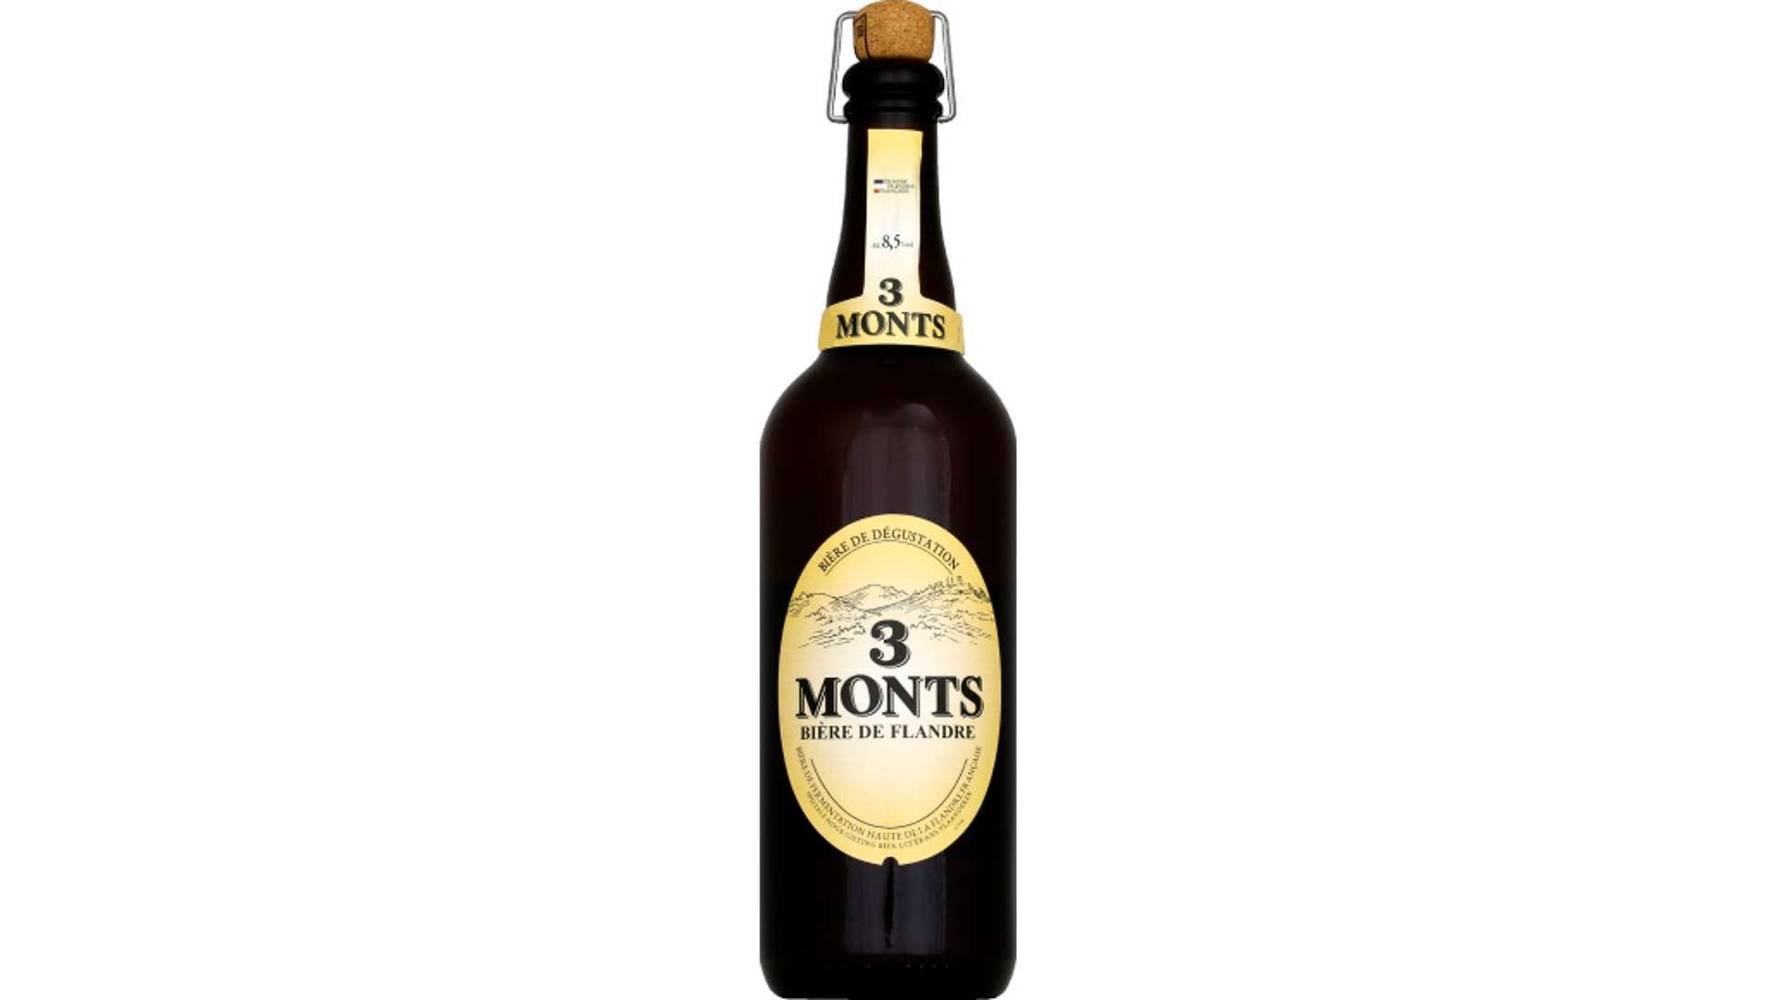 3 Monts - Bière de flandre (750 ml)